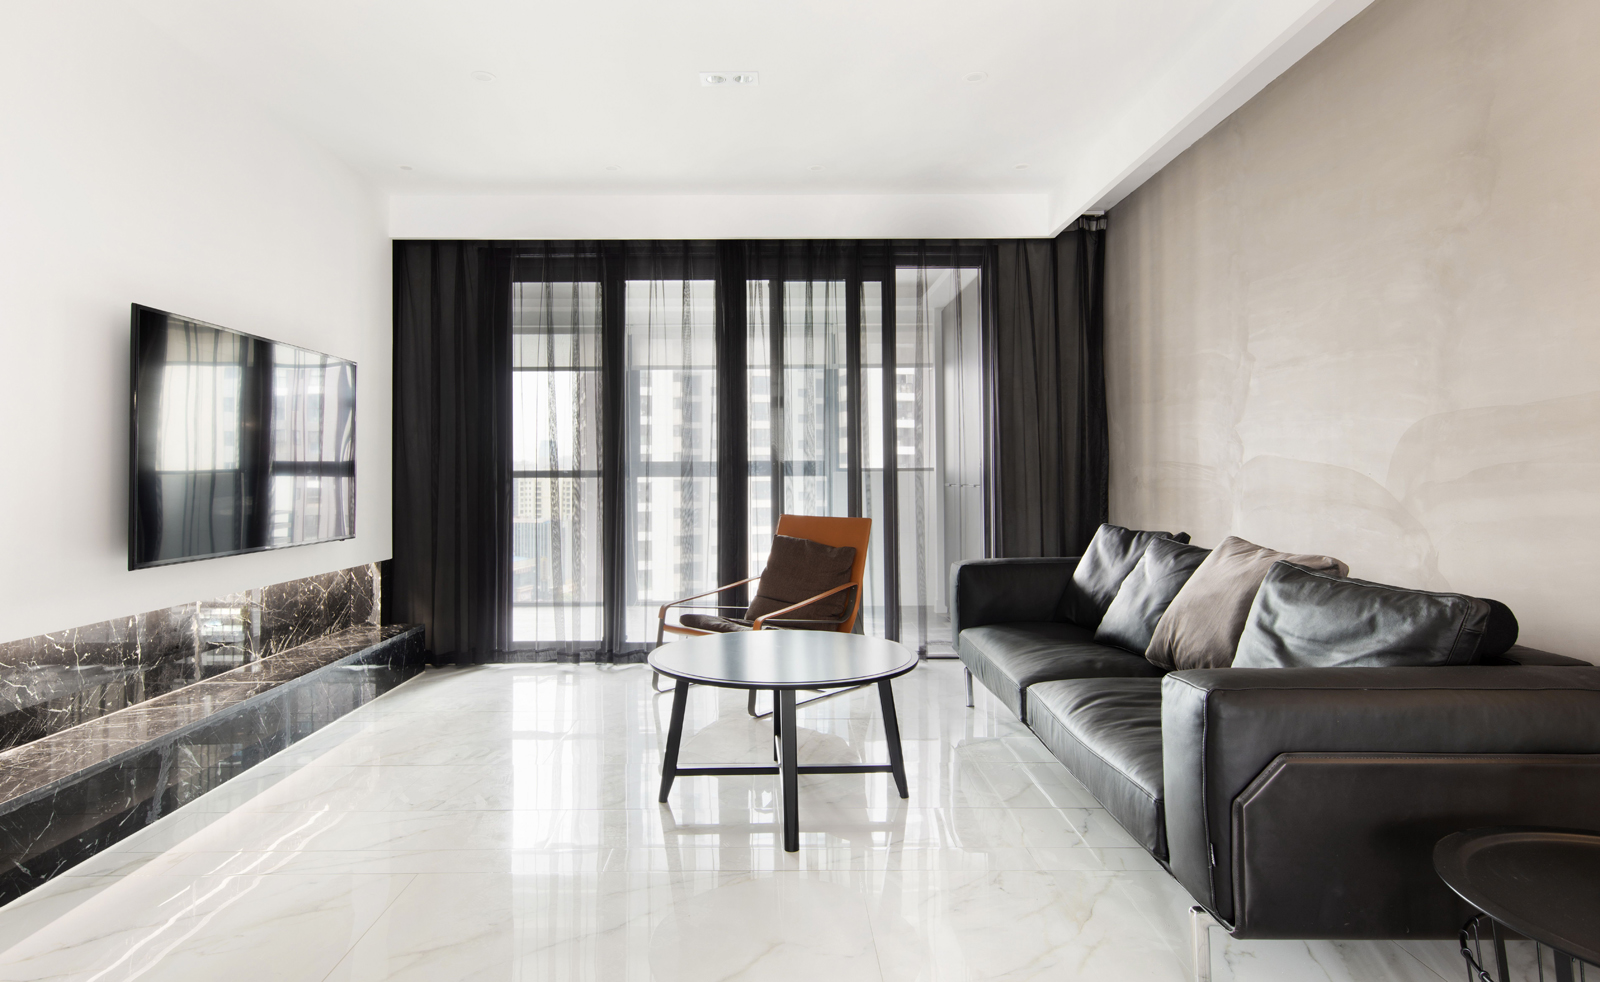 客厅空间不大，不宜选择过于复杂的造型和结构，简单大方更加合适。